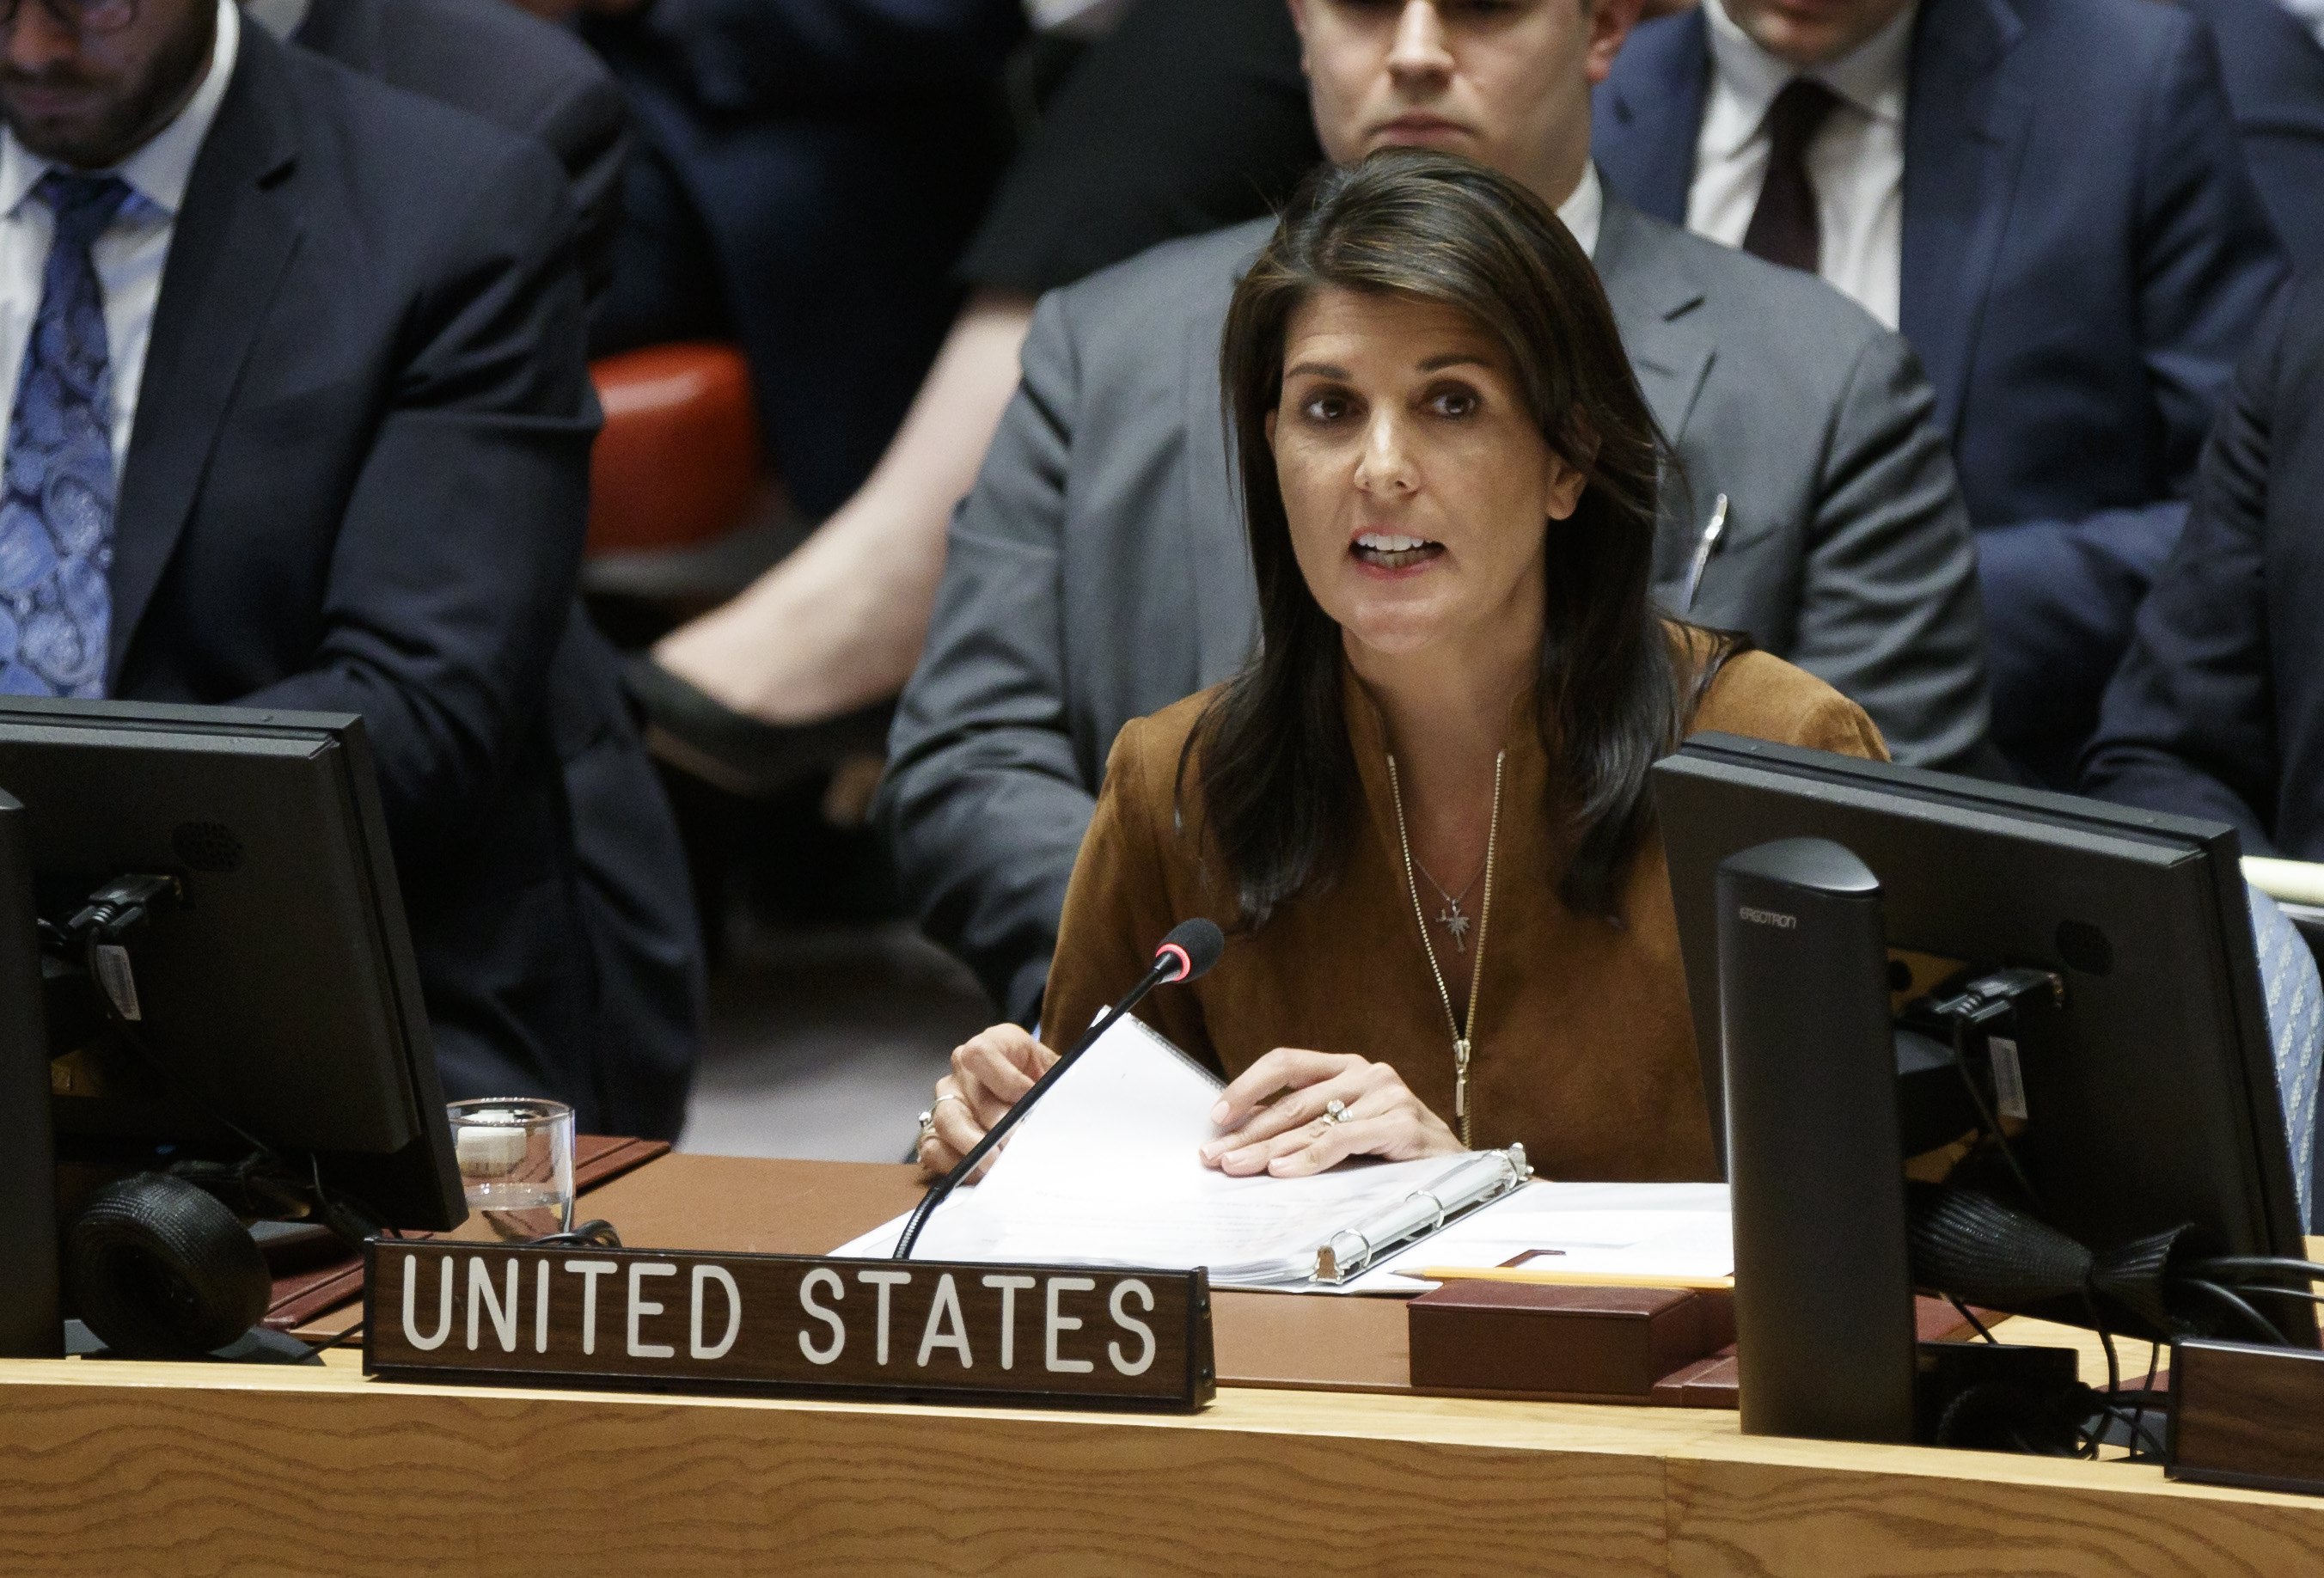 Haley llamó al Consejo de Seguridad a actuar e indicó que presentará una resolución para obtener “acceso irrestricto” a la población civil de Duma.